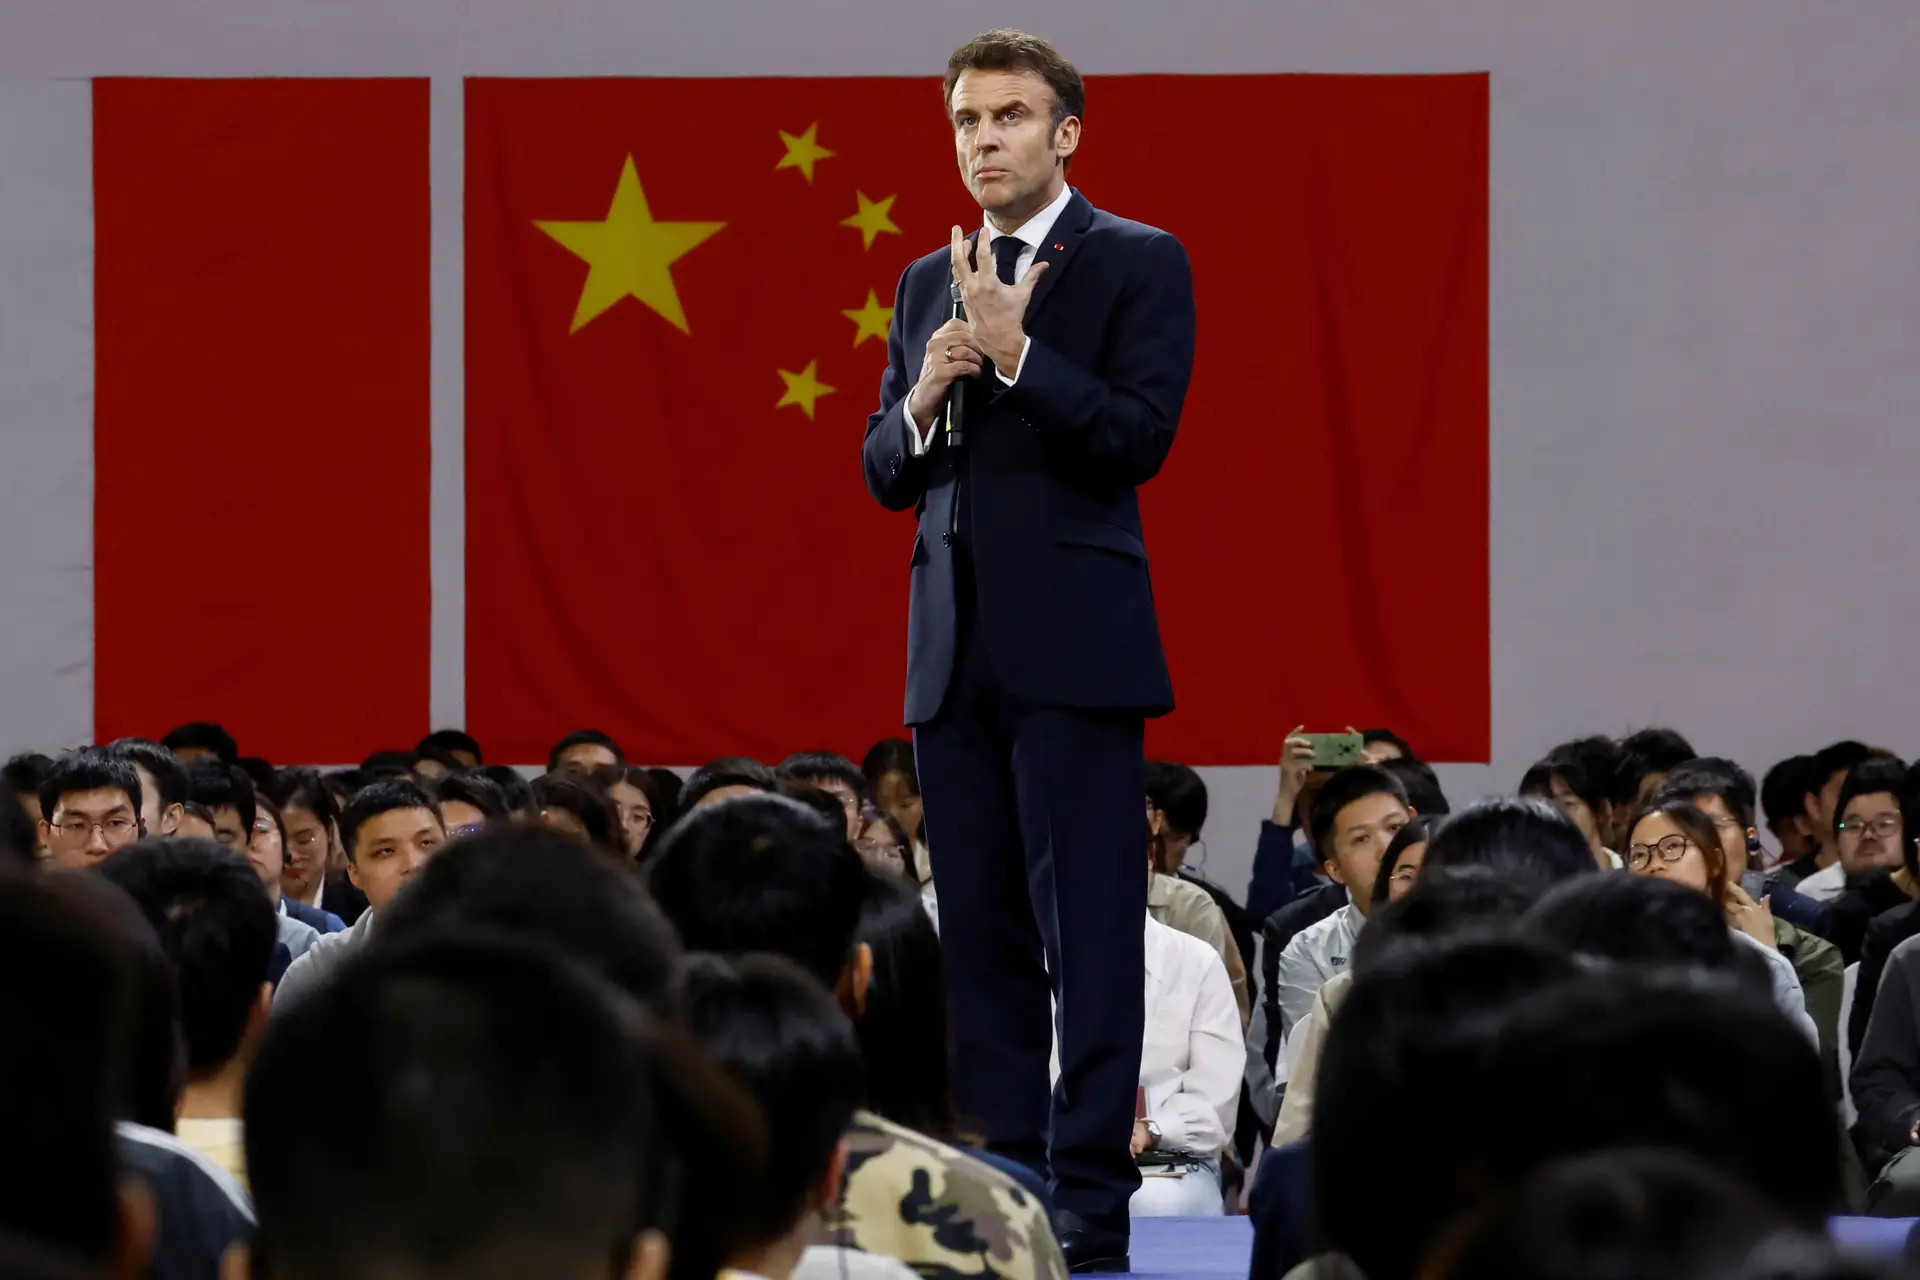 O Presidente francês reuniu-se com estudantes chineses no terceiro dia de visita à China.